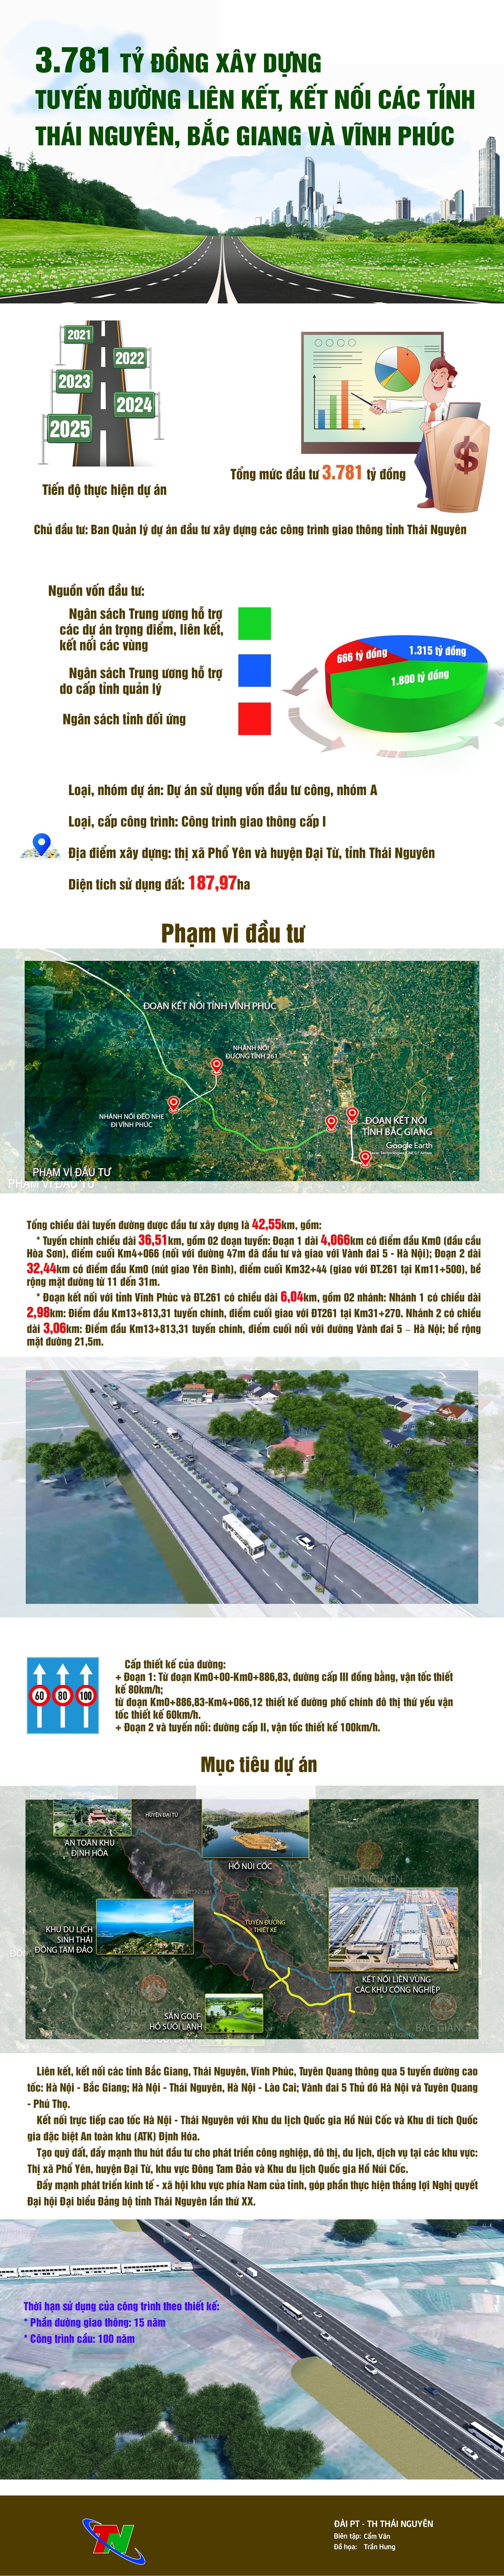 [Infographic] 3.781 tỷ đồng xây dựng Tuyến đường liên kết, kết nối các tỉnh Thái Nguyên, Bắc Giang và Vĩnh Phúc